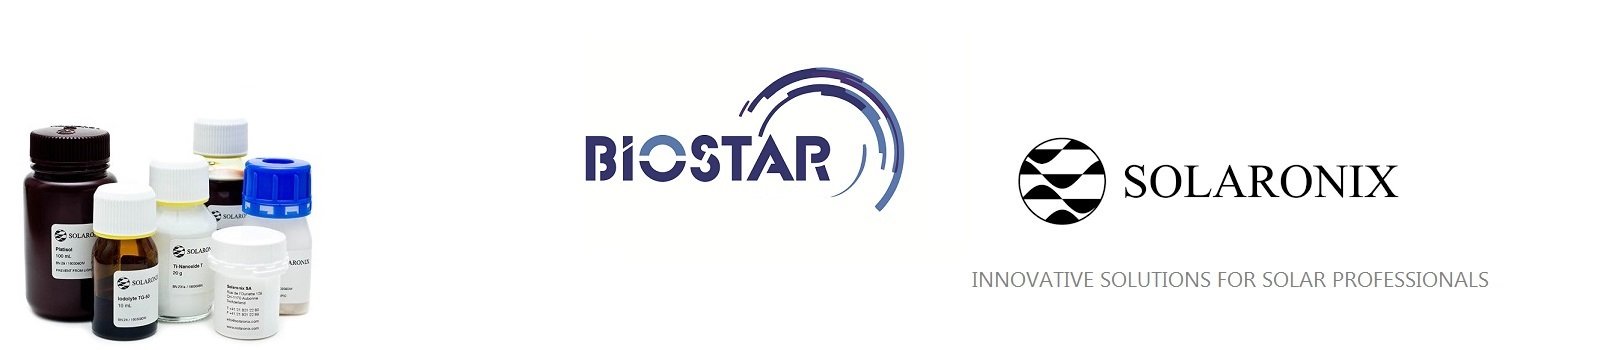 Solaronix ürünleri Biostar'da